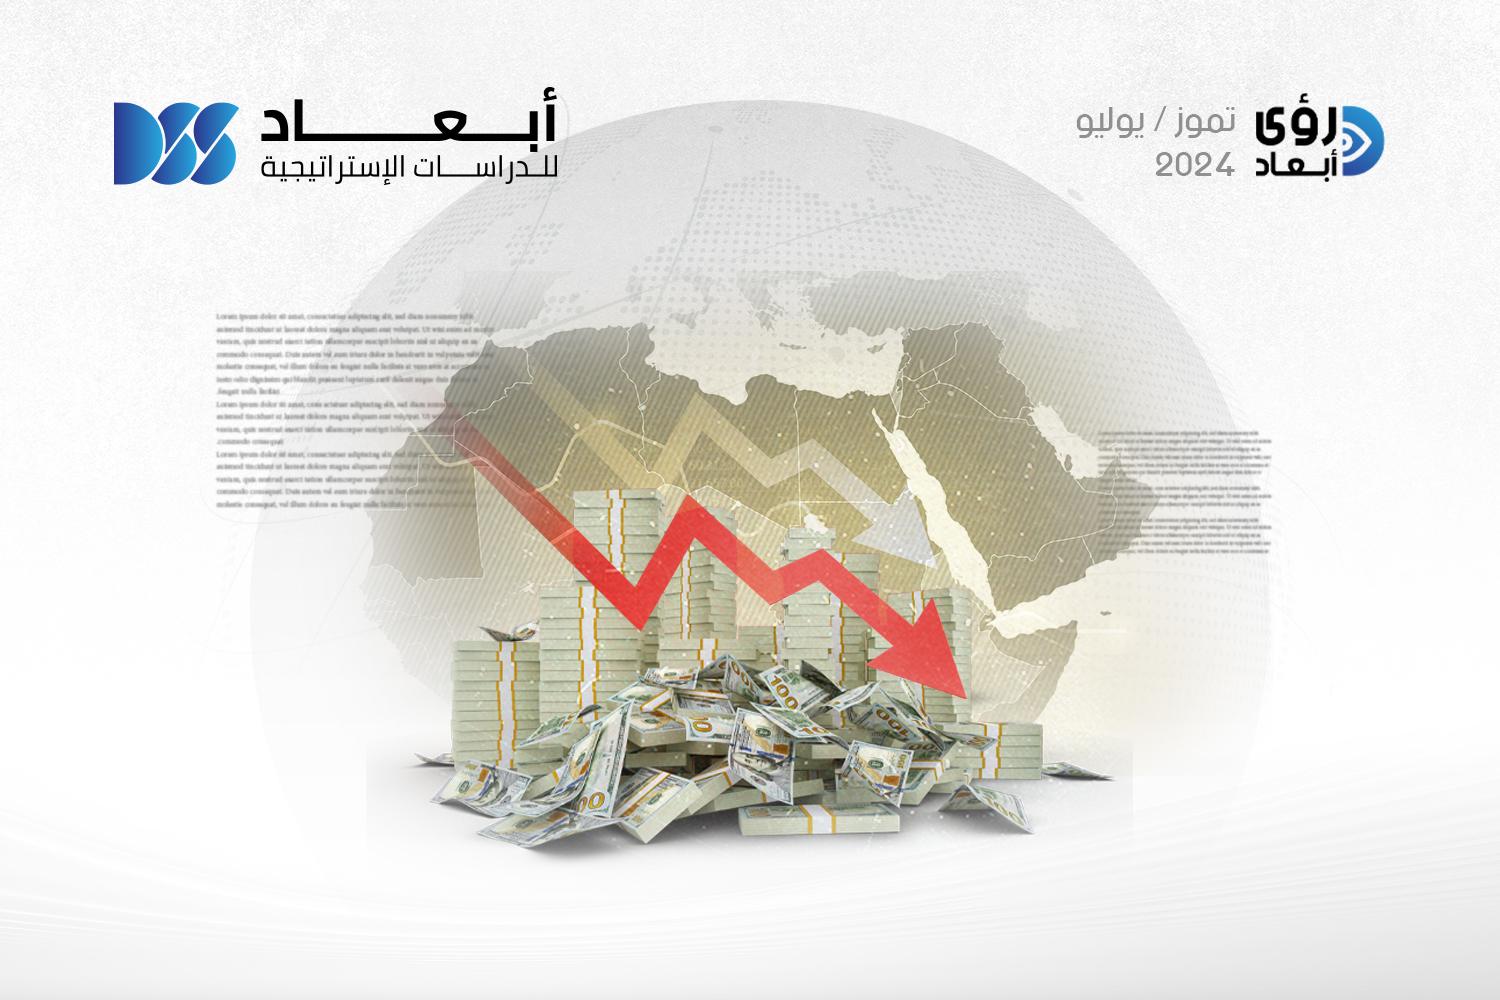 الدَّيْن العامّ في بعض الدول العربية: إلى أيّ مدى يهدد الدولة؟